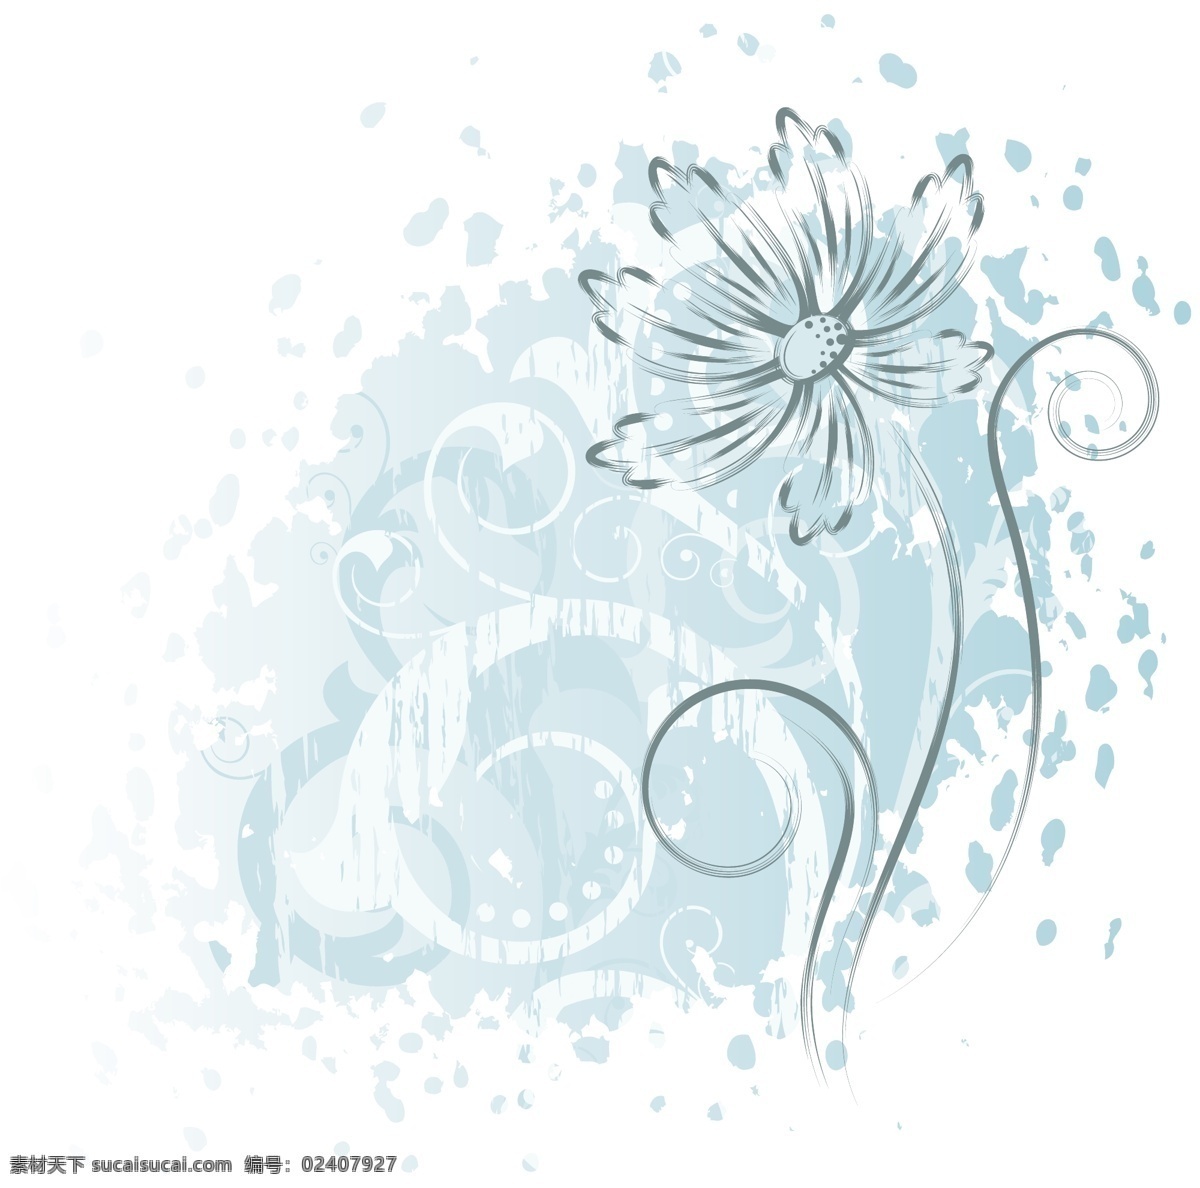 精美 手绘 花朵 矢量 背景 插图 花卉 绘画 植物 菊花图案 矢量图 现代科技